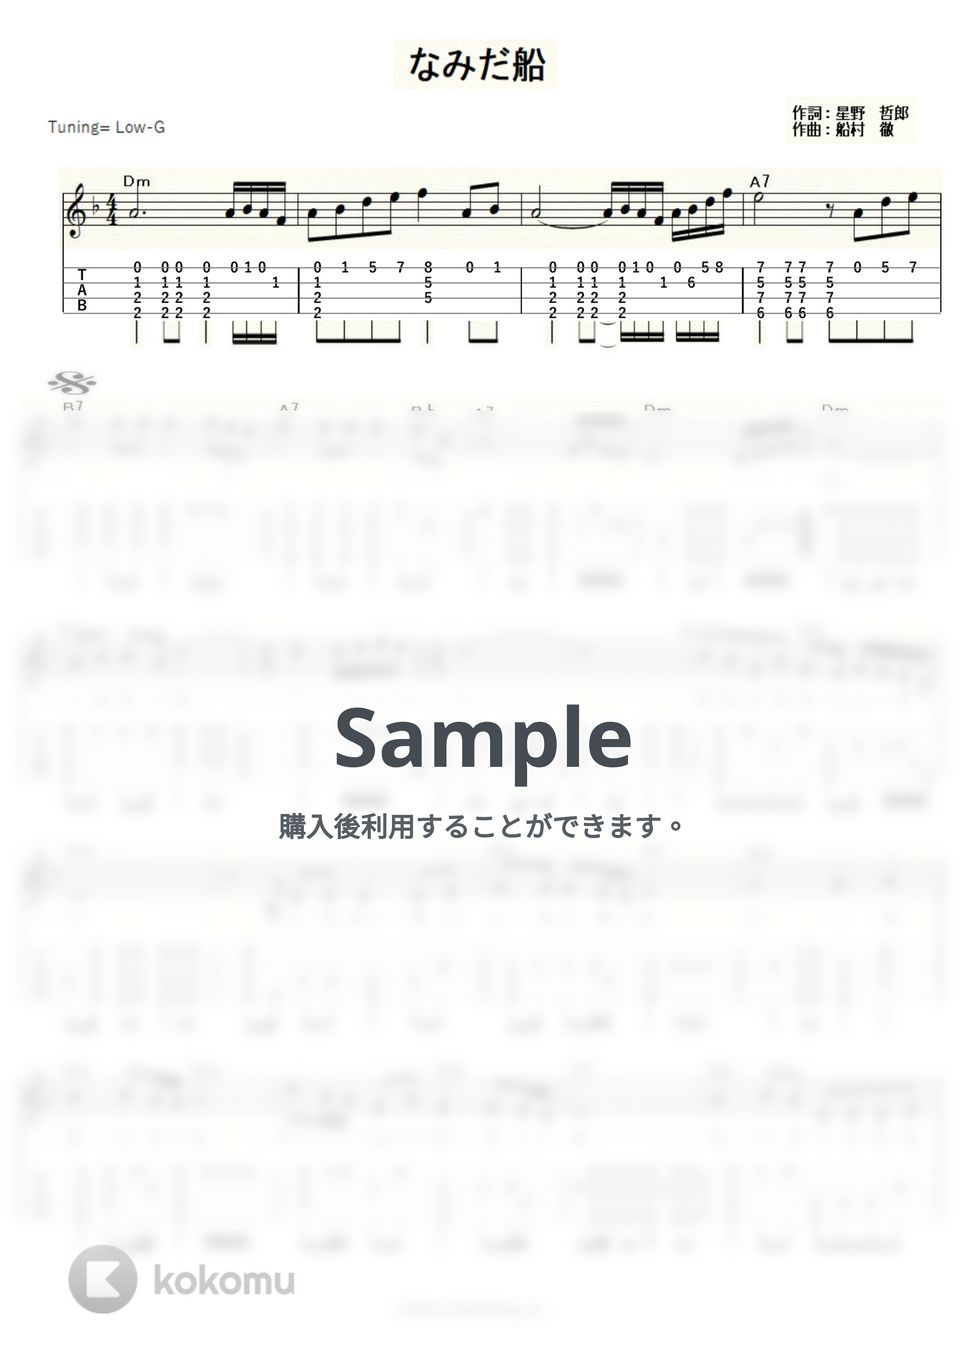 北島三郎 - なみだ船 (ｳｸﾚﾚｿﾛ/Low-G/中級) by ukulelepapa